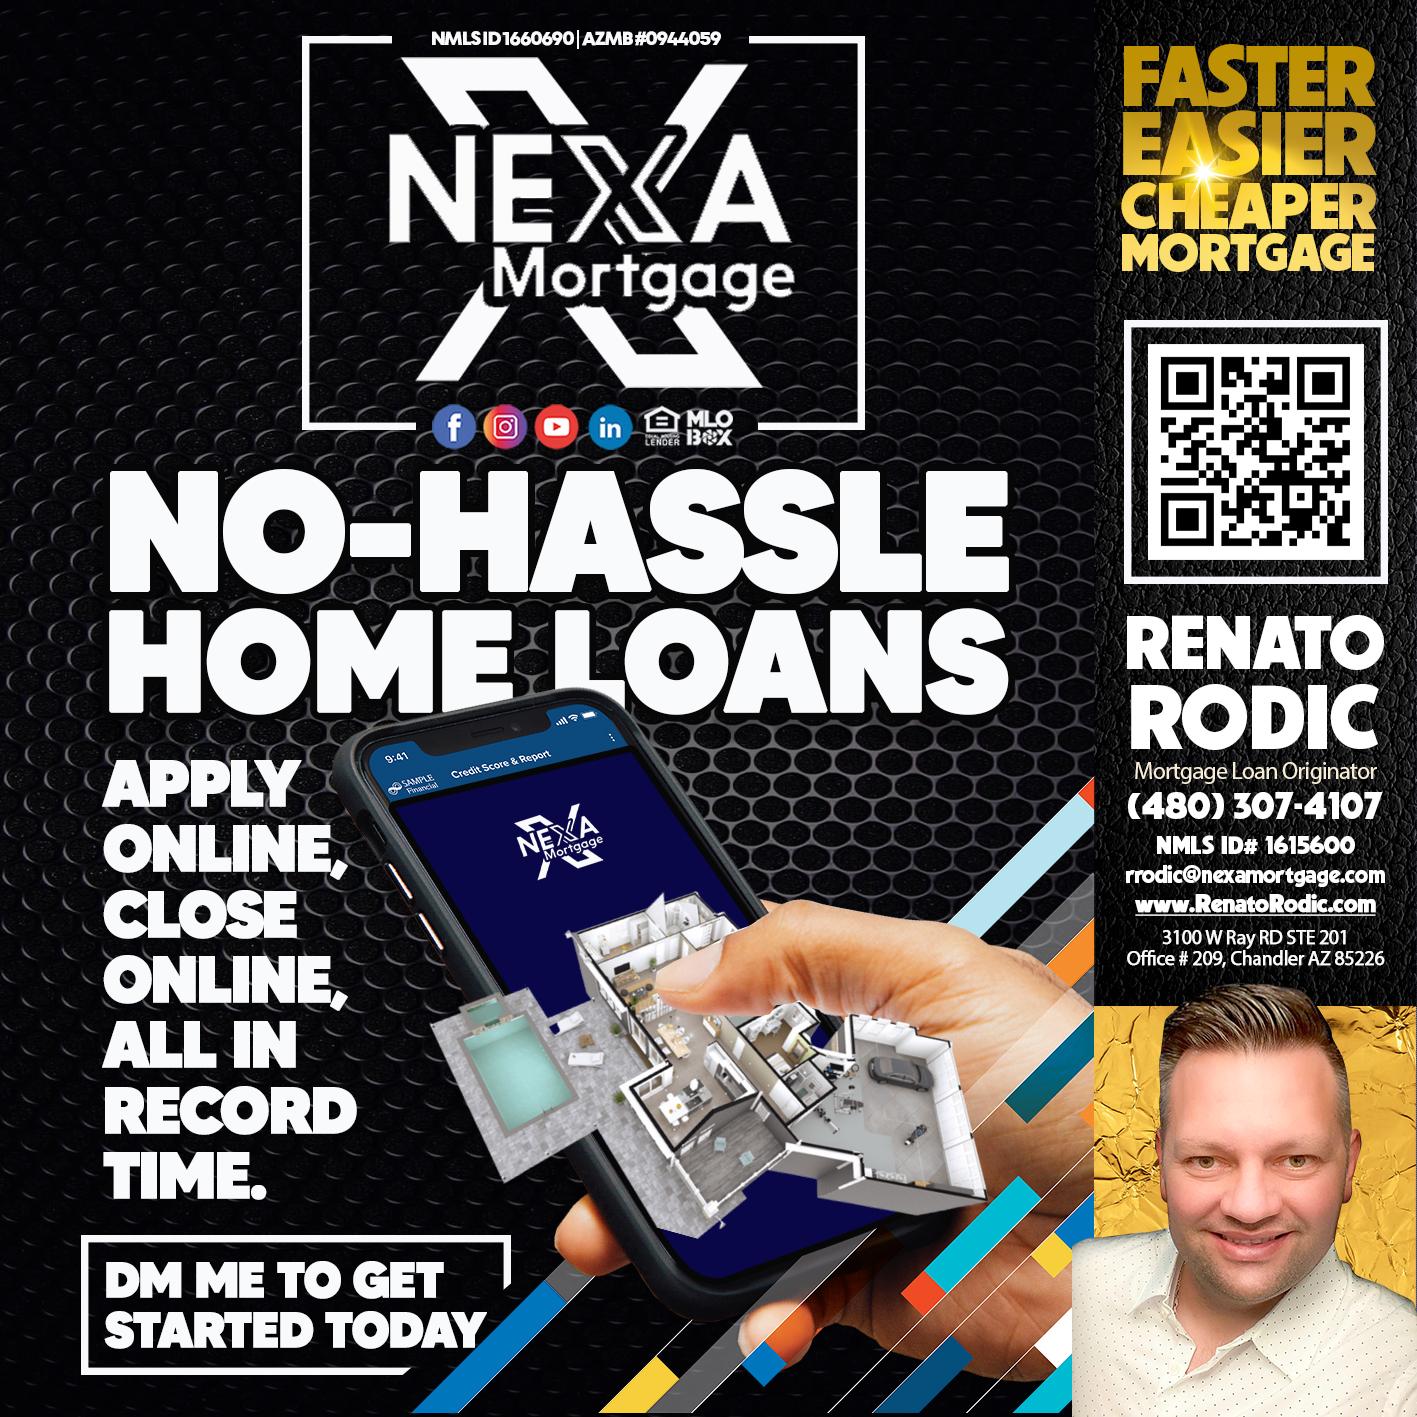 NO-HASSLE - Renato Rodic -Mortgage Loan Originator